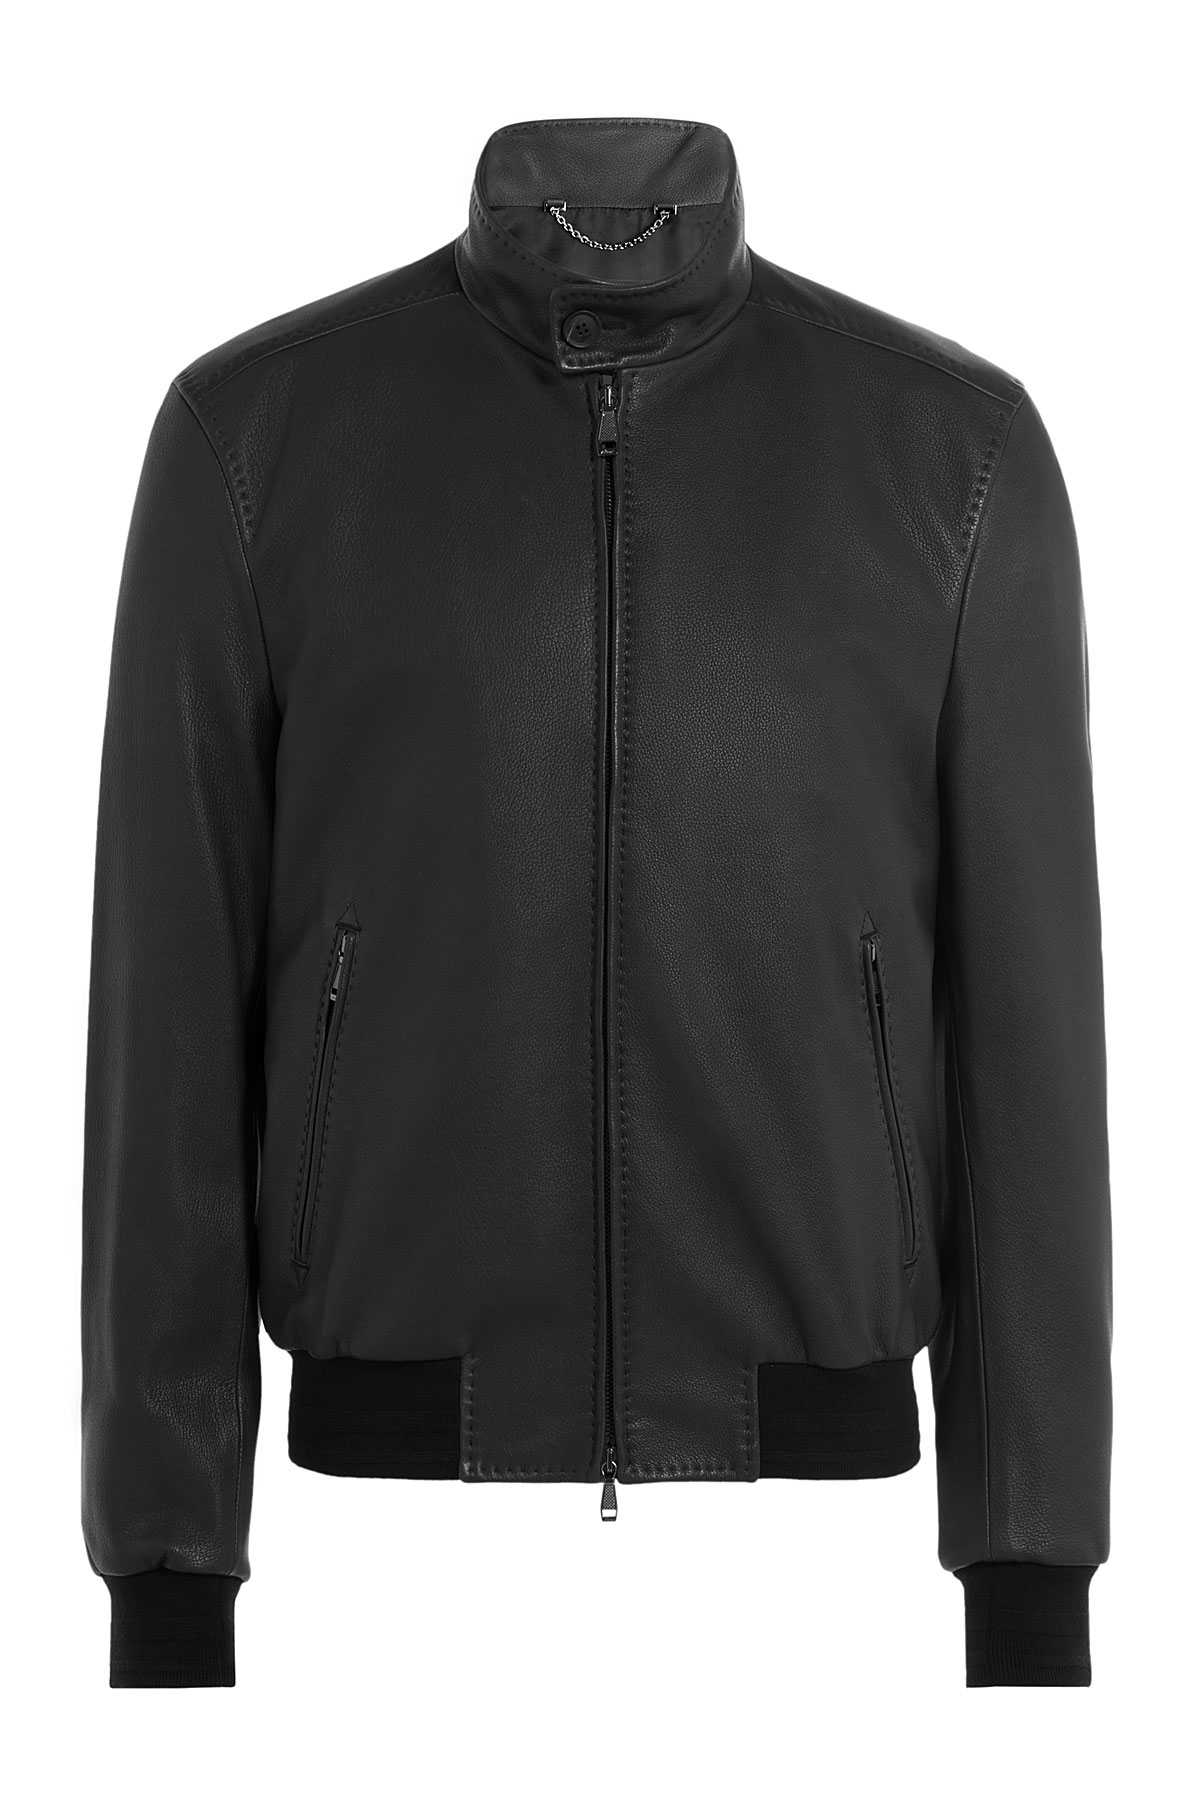 Lyst Brioni Leather Bomber Jacket Black In Black For Men